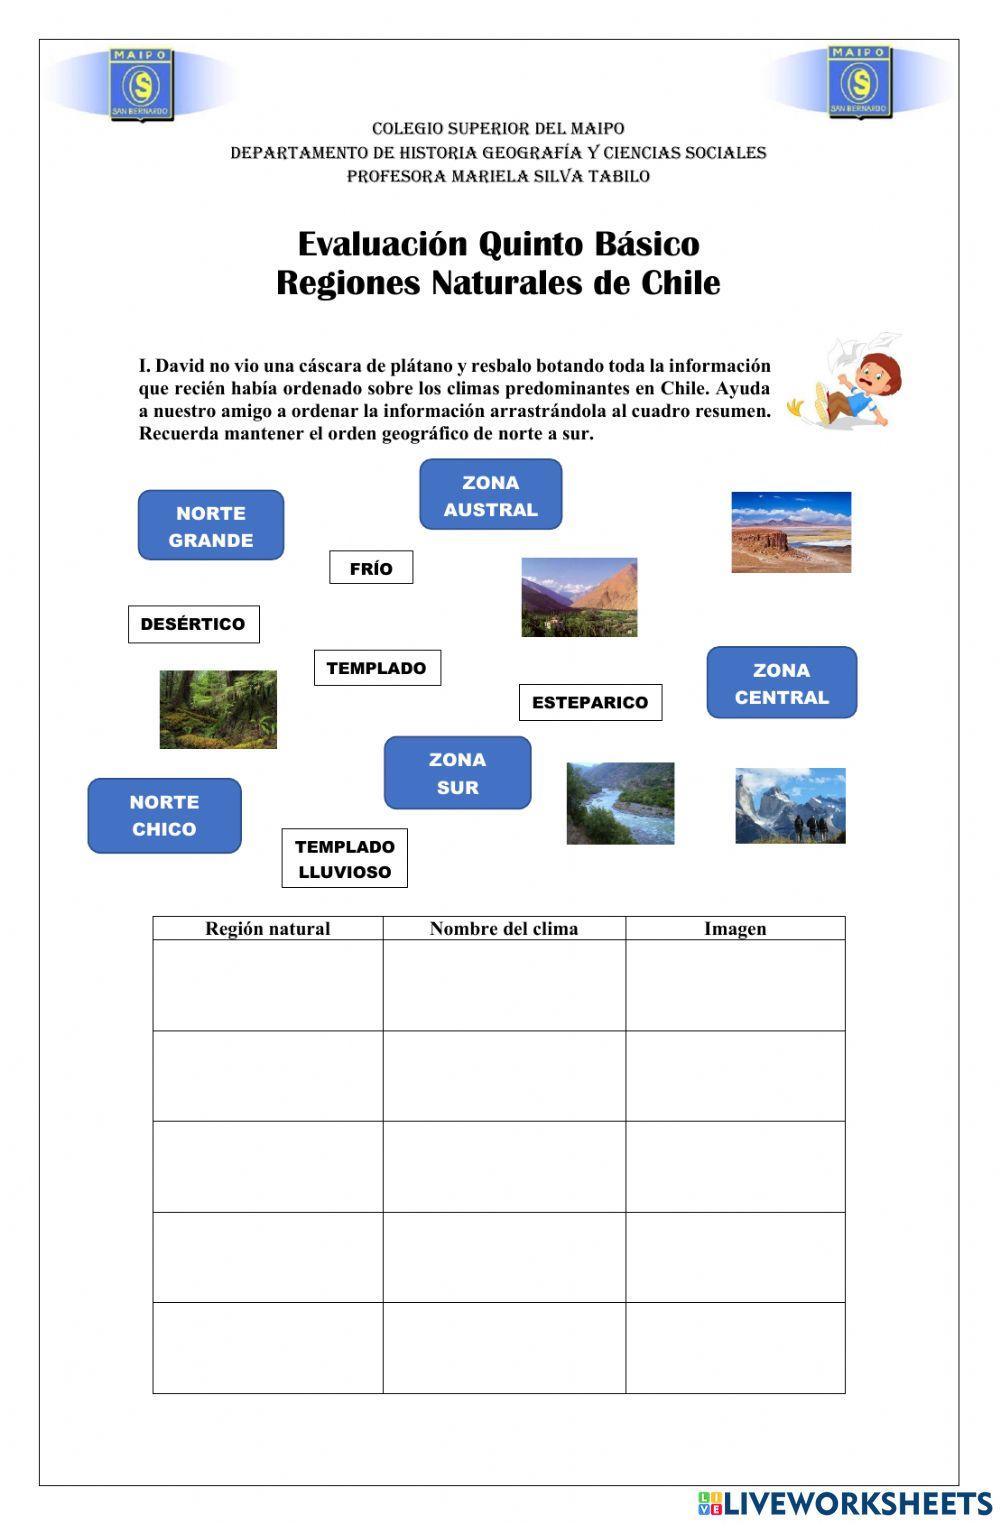 Regiones naturales de Chile